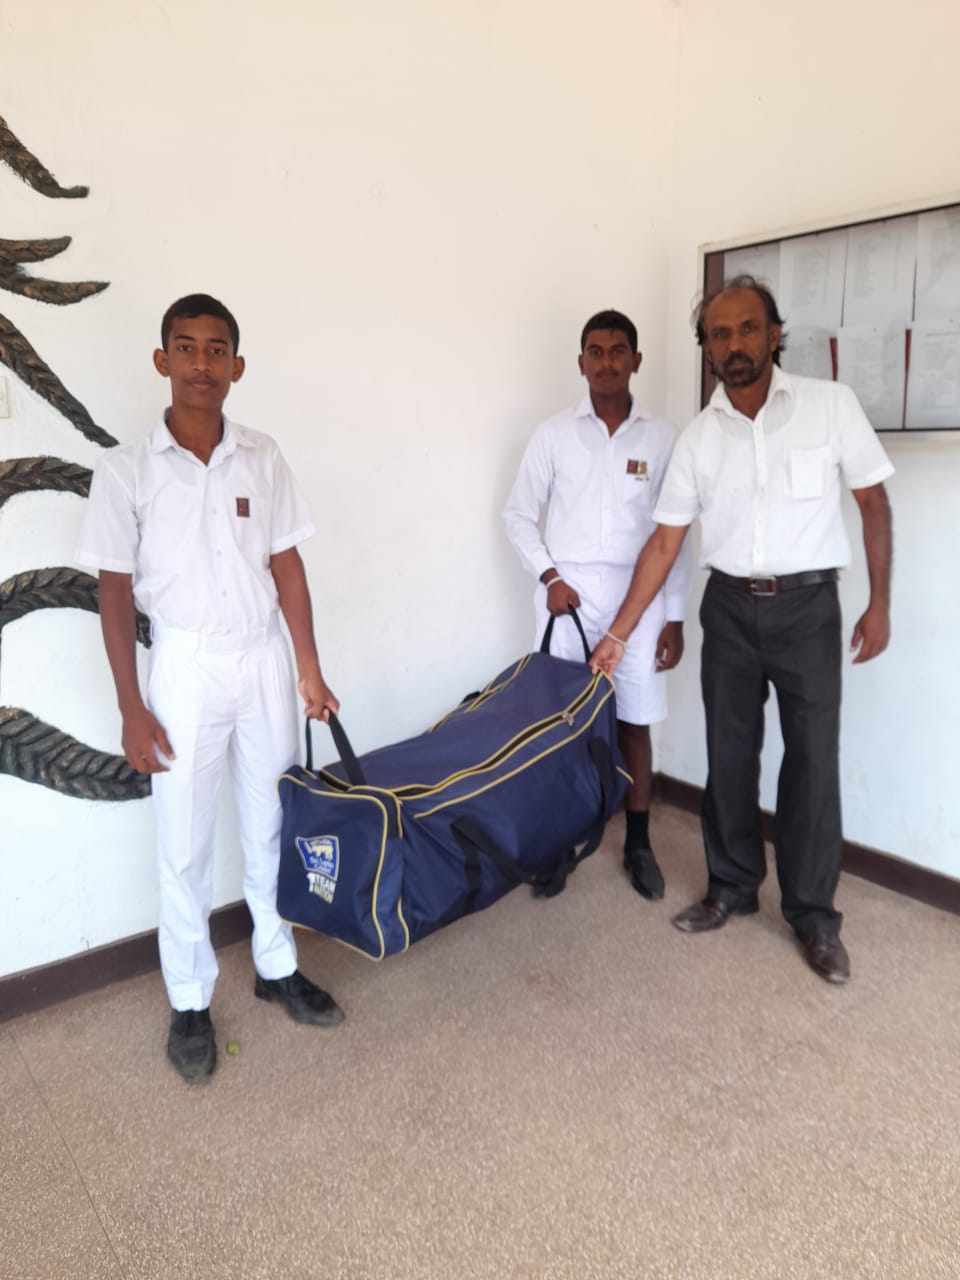 Sri Lanka Cricket provides ‘Cricket Equipment’ to Danidu, who scored 553 runs